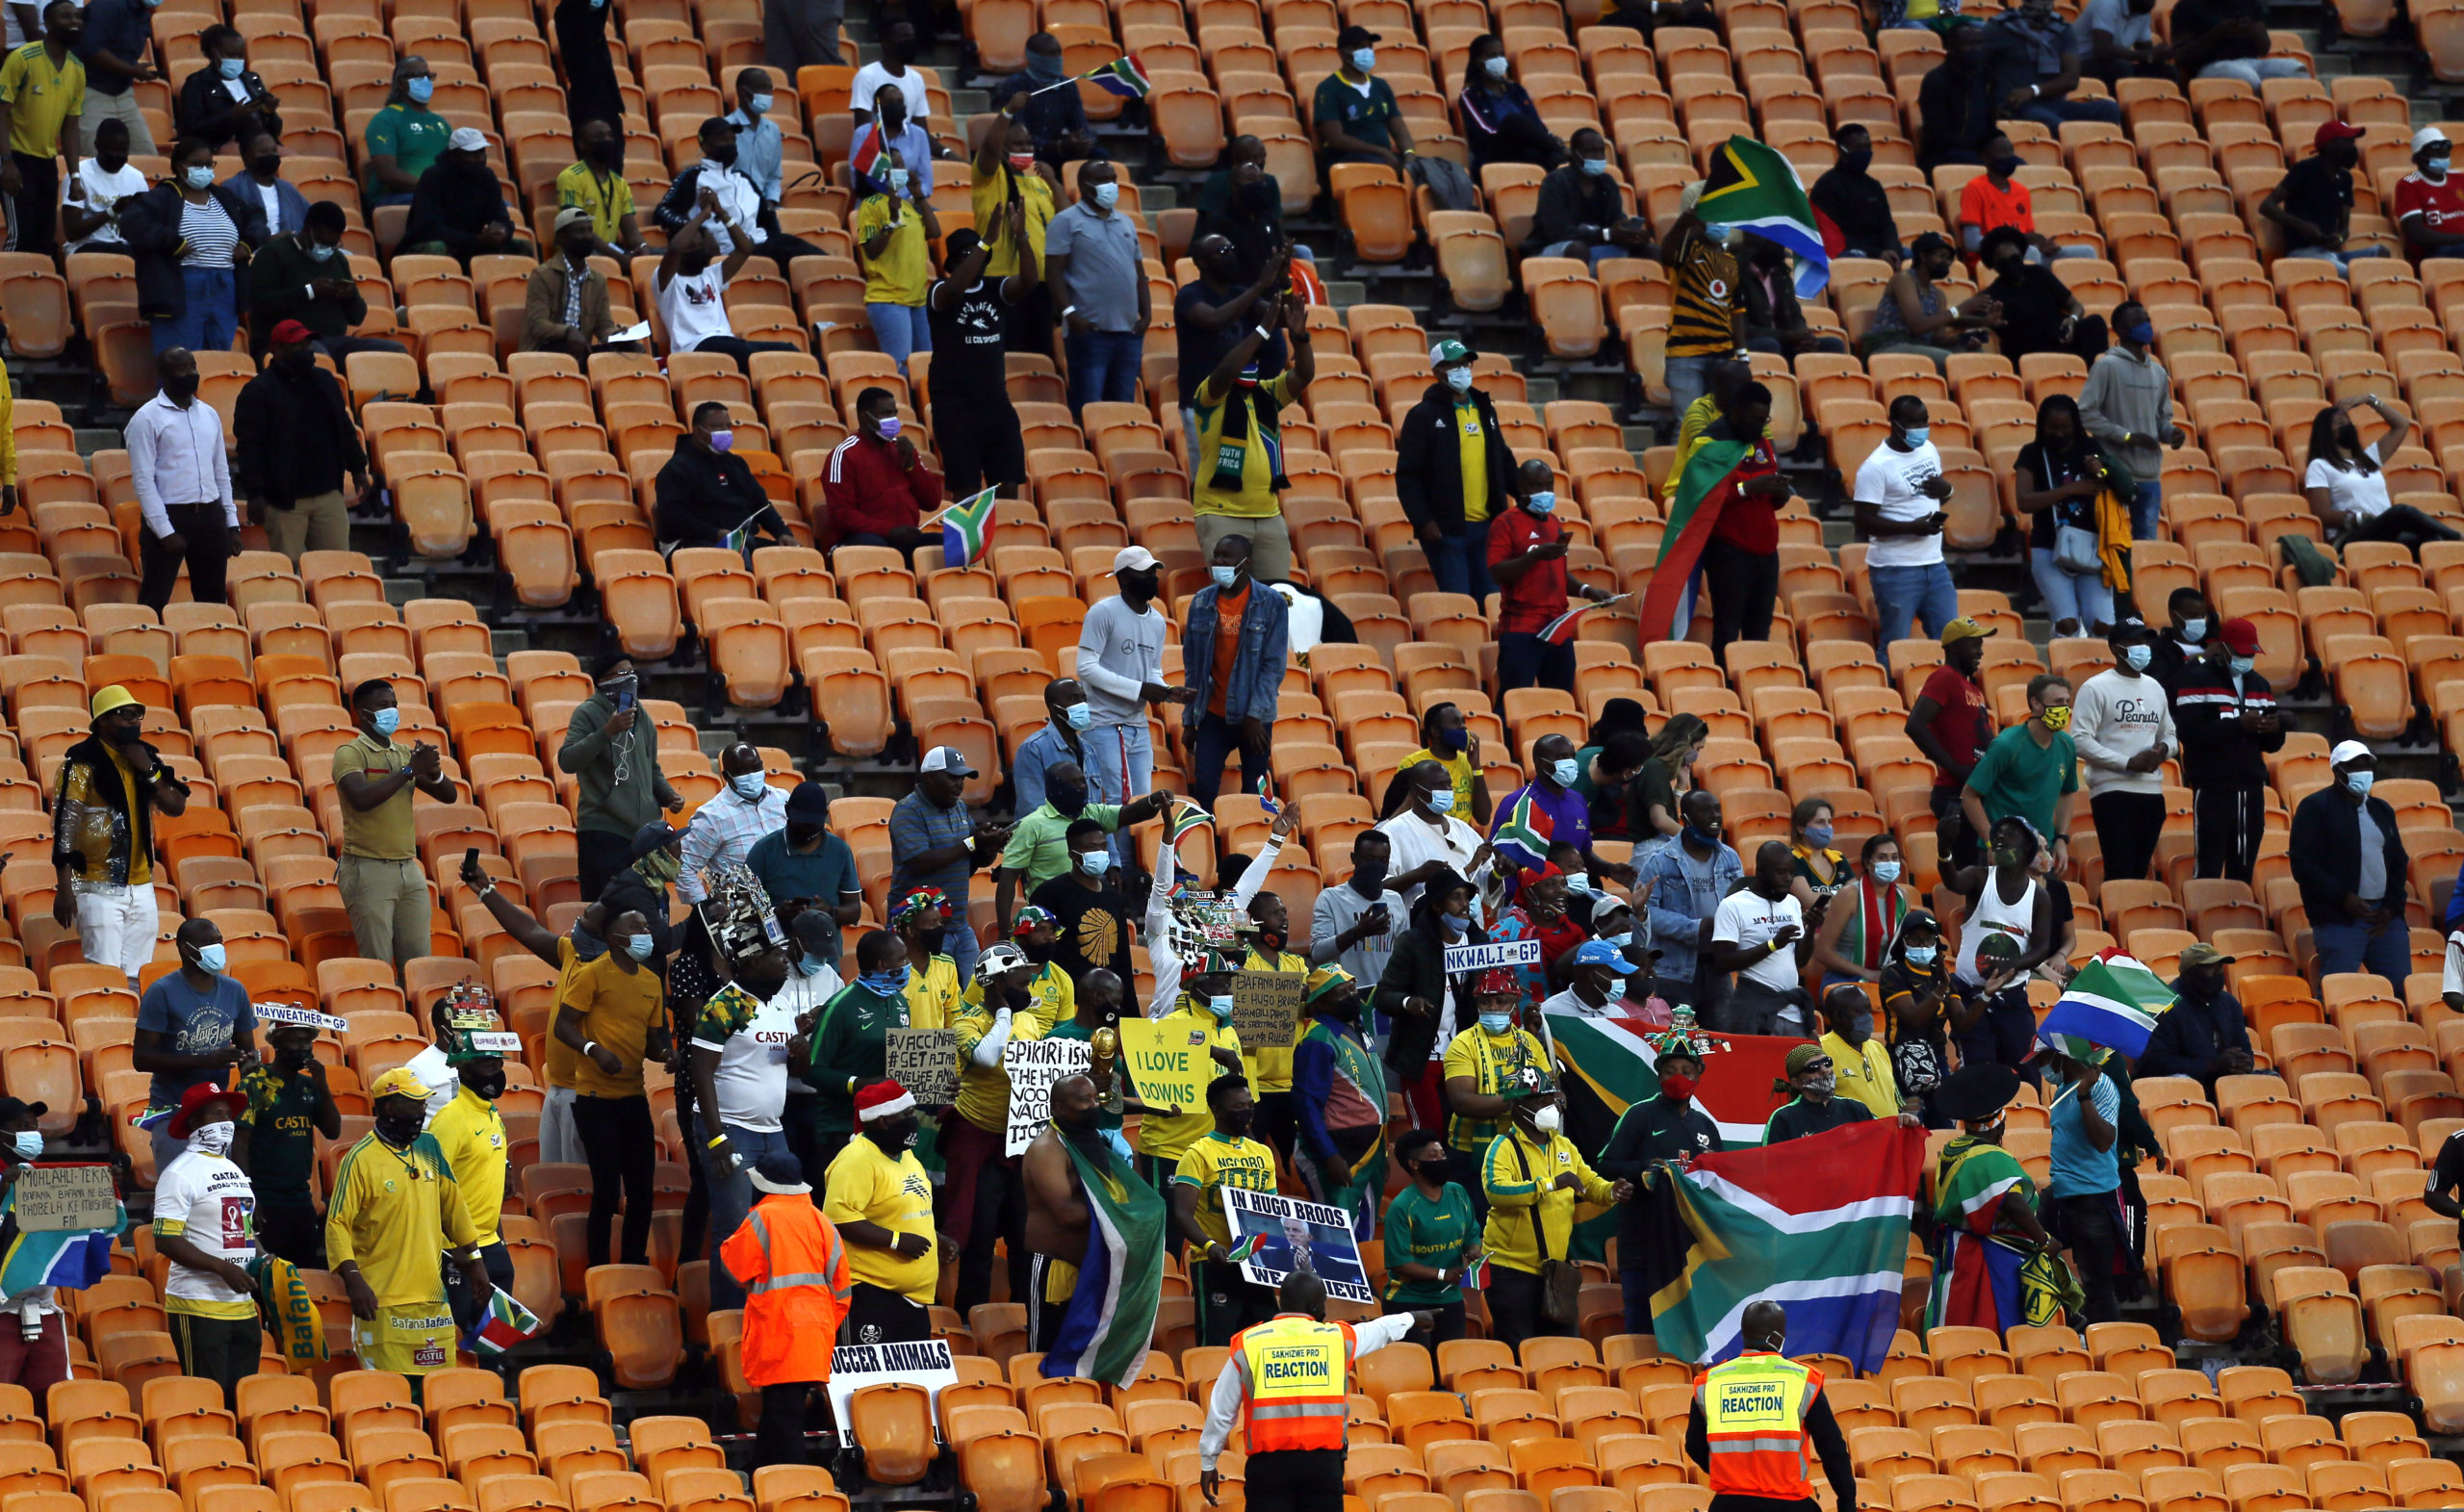 bafana supporters